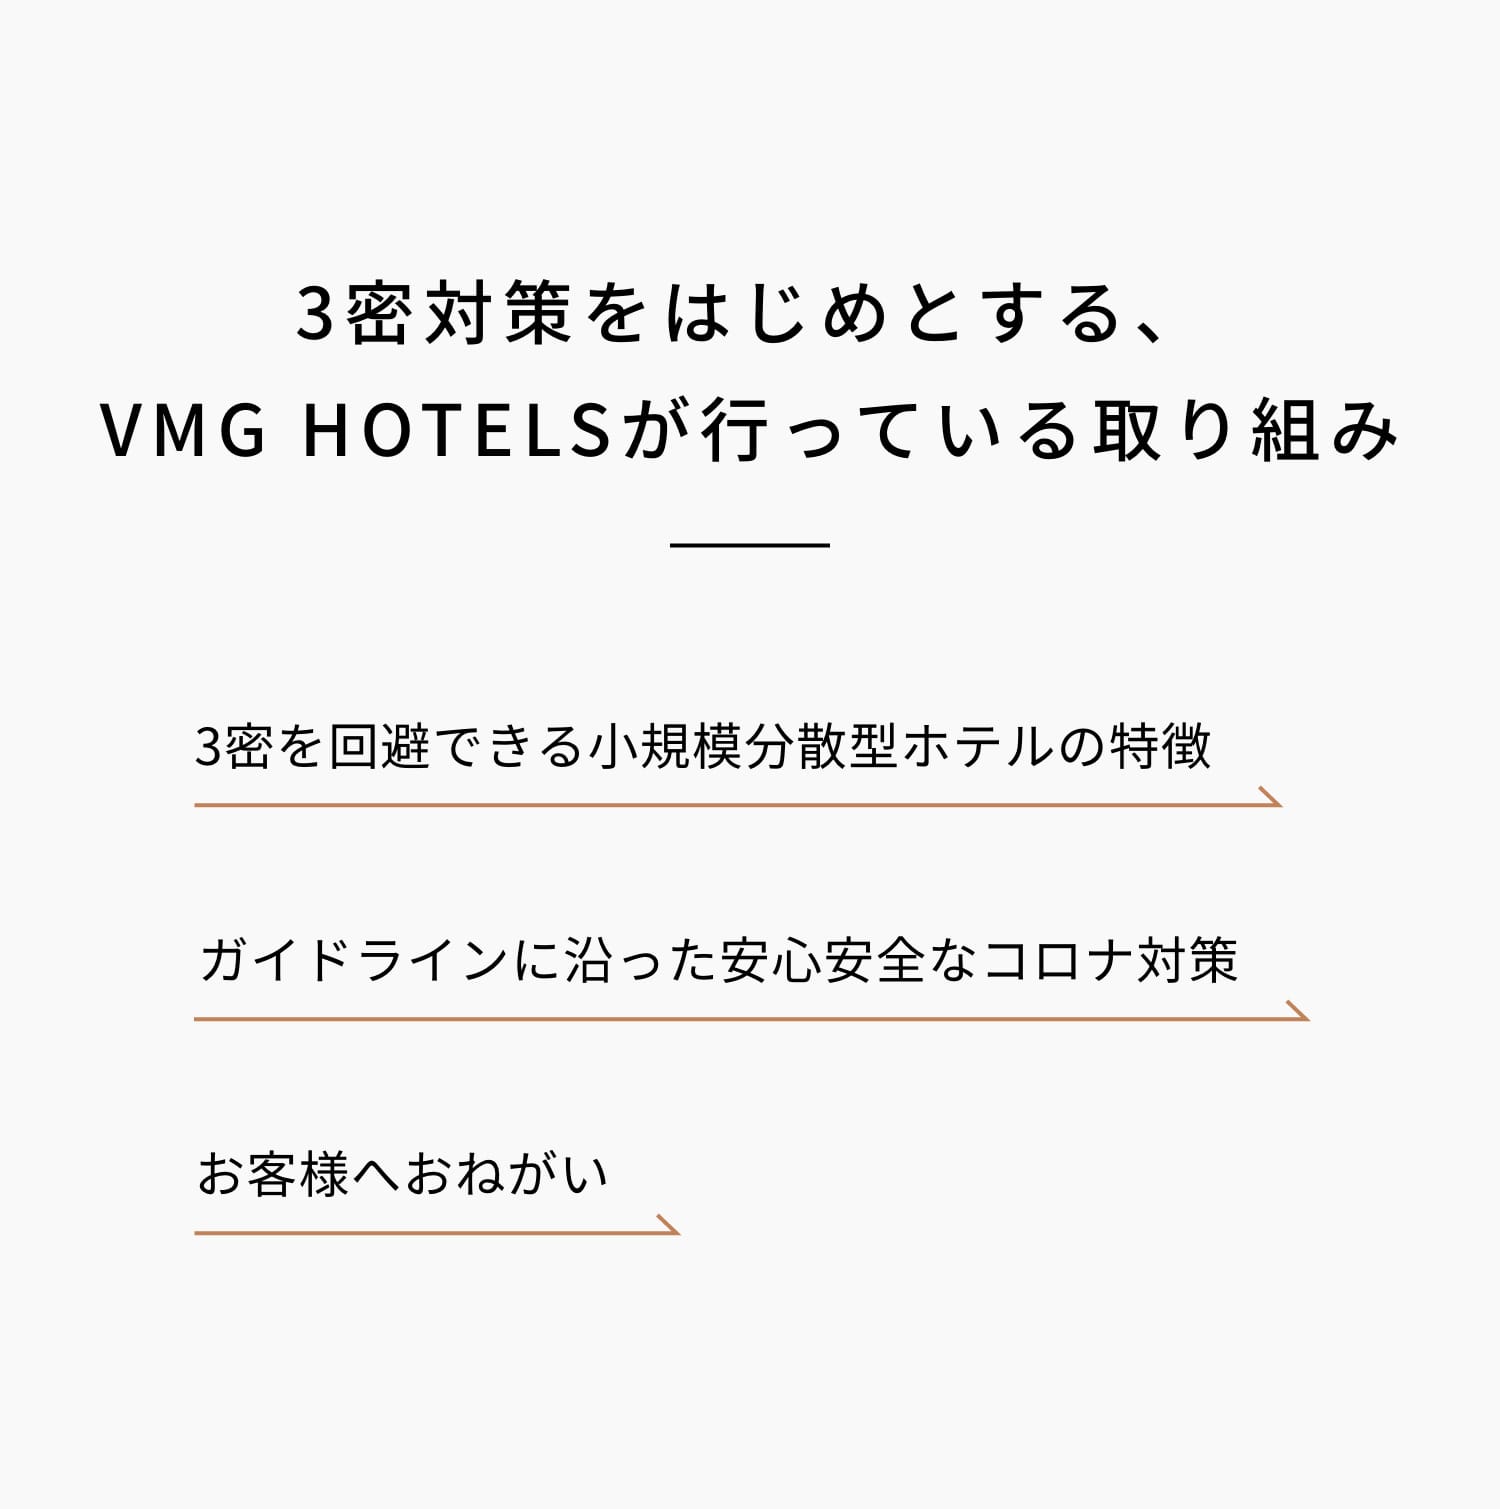 3密対策をはじめとする、VMG HOTELSが行なっている取り組み